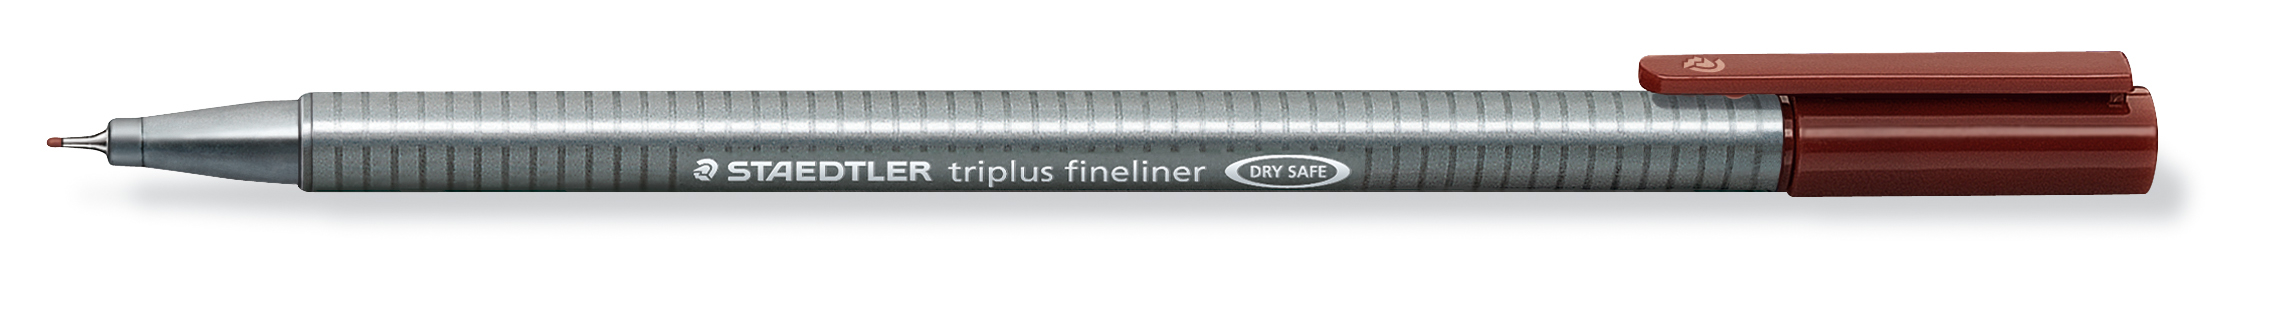 STAEDTLER Triplus Fineliner 0,3mm 334-76 braun